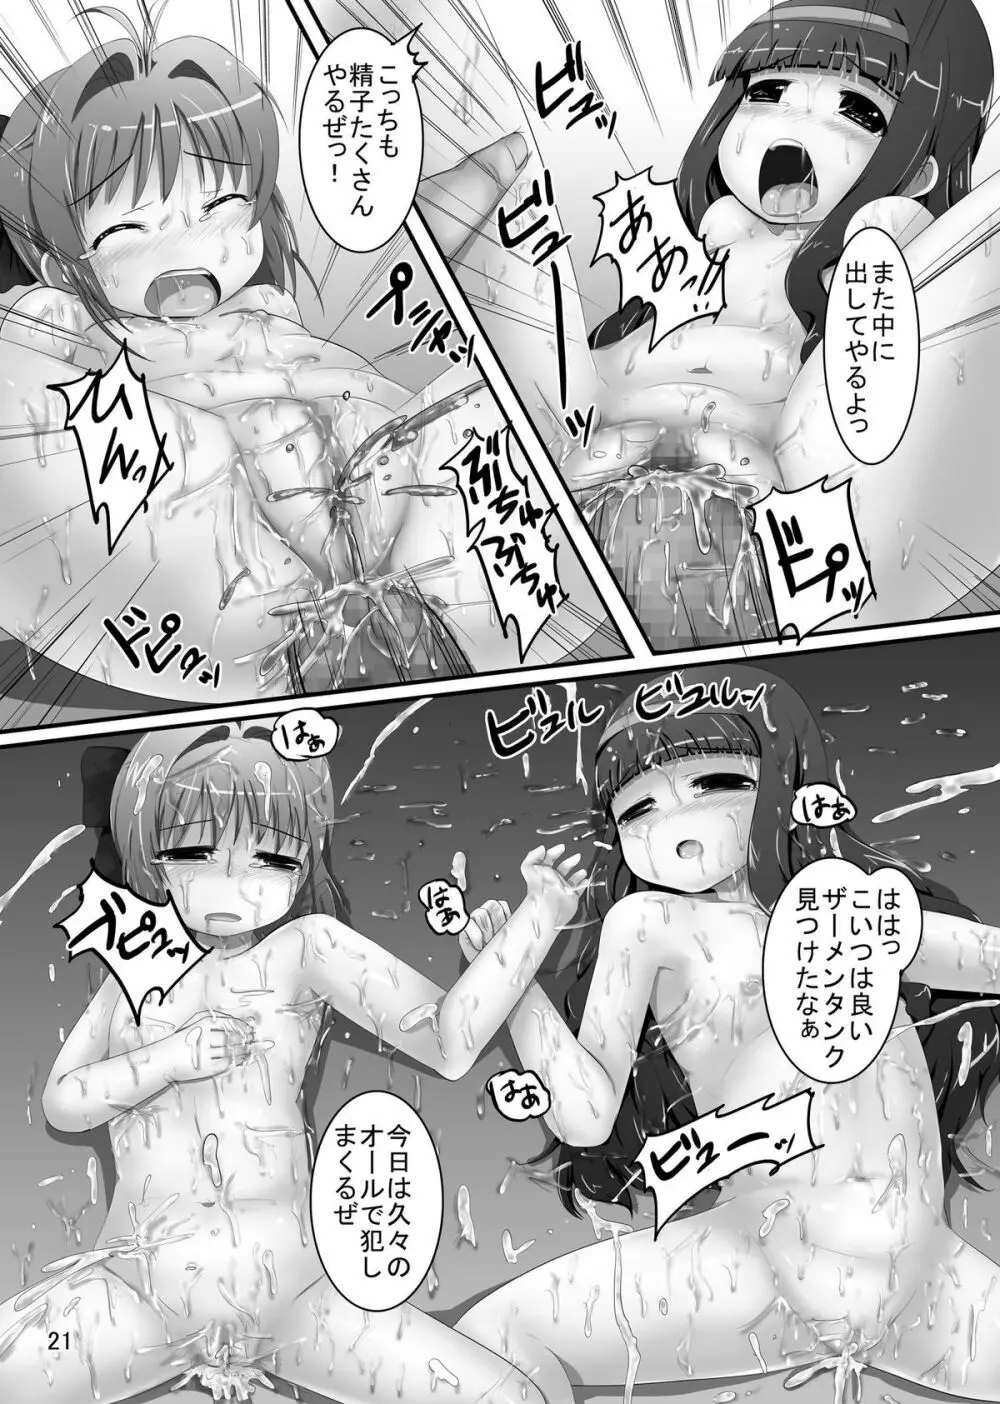 しぃしぃさくら 悪夢のトレンドワード #尻花火 - page21